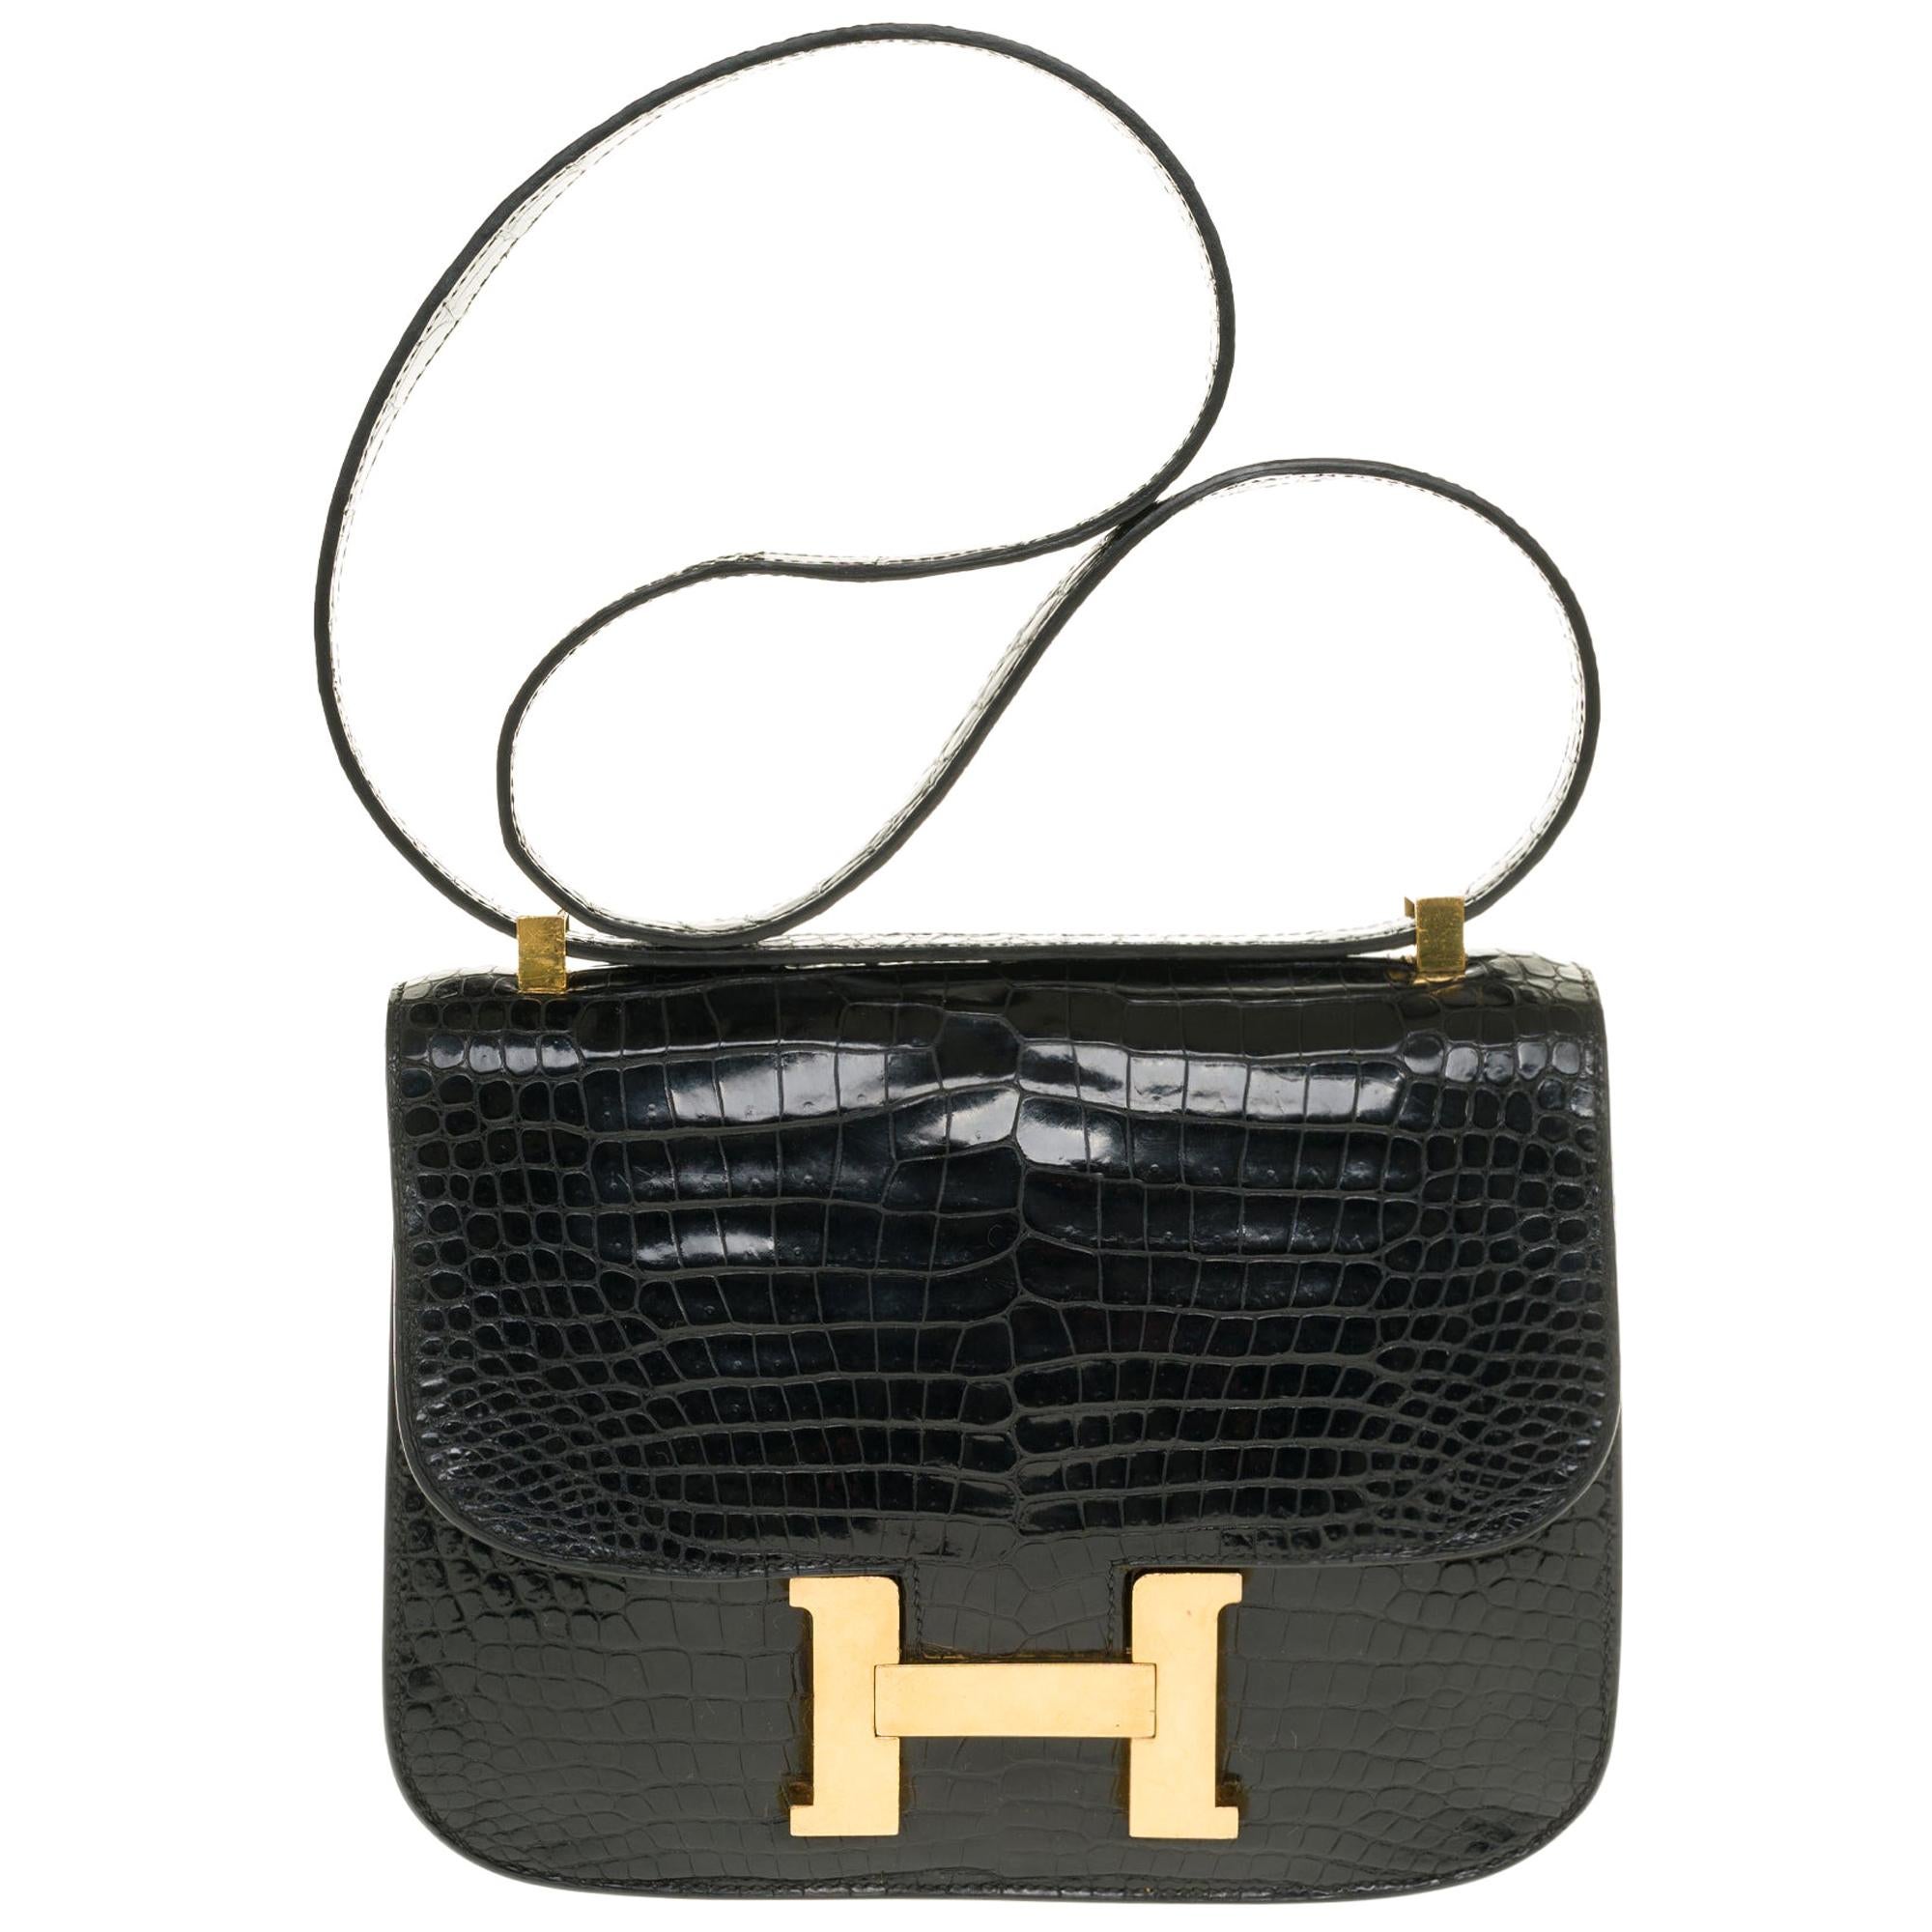 Hermes Constance 23 shoulder bag in black Crocodile with gold hardware !